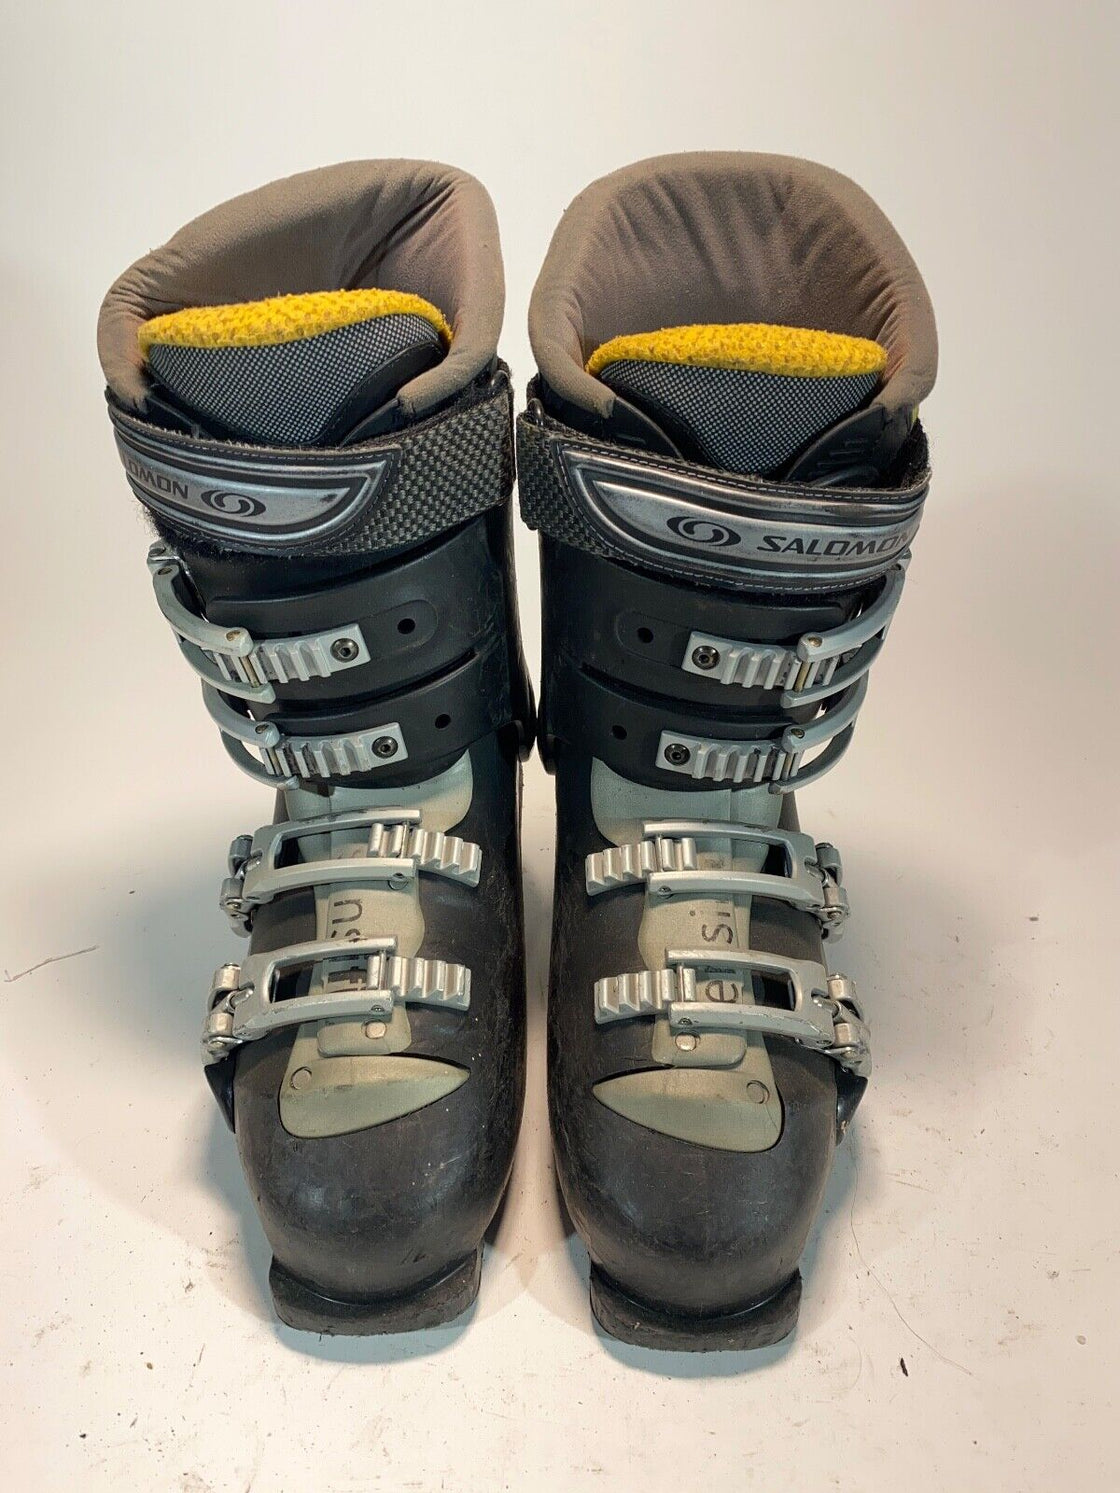 SALOMON Alpine Ski Boots Downhill Boots Size Mondo 260 mm, Outer Sole 307 mm